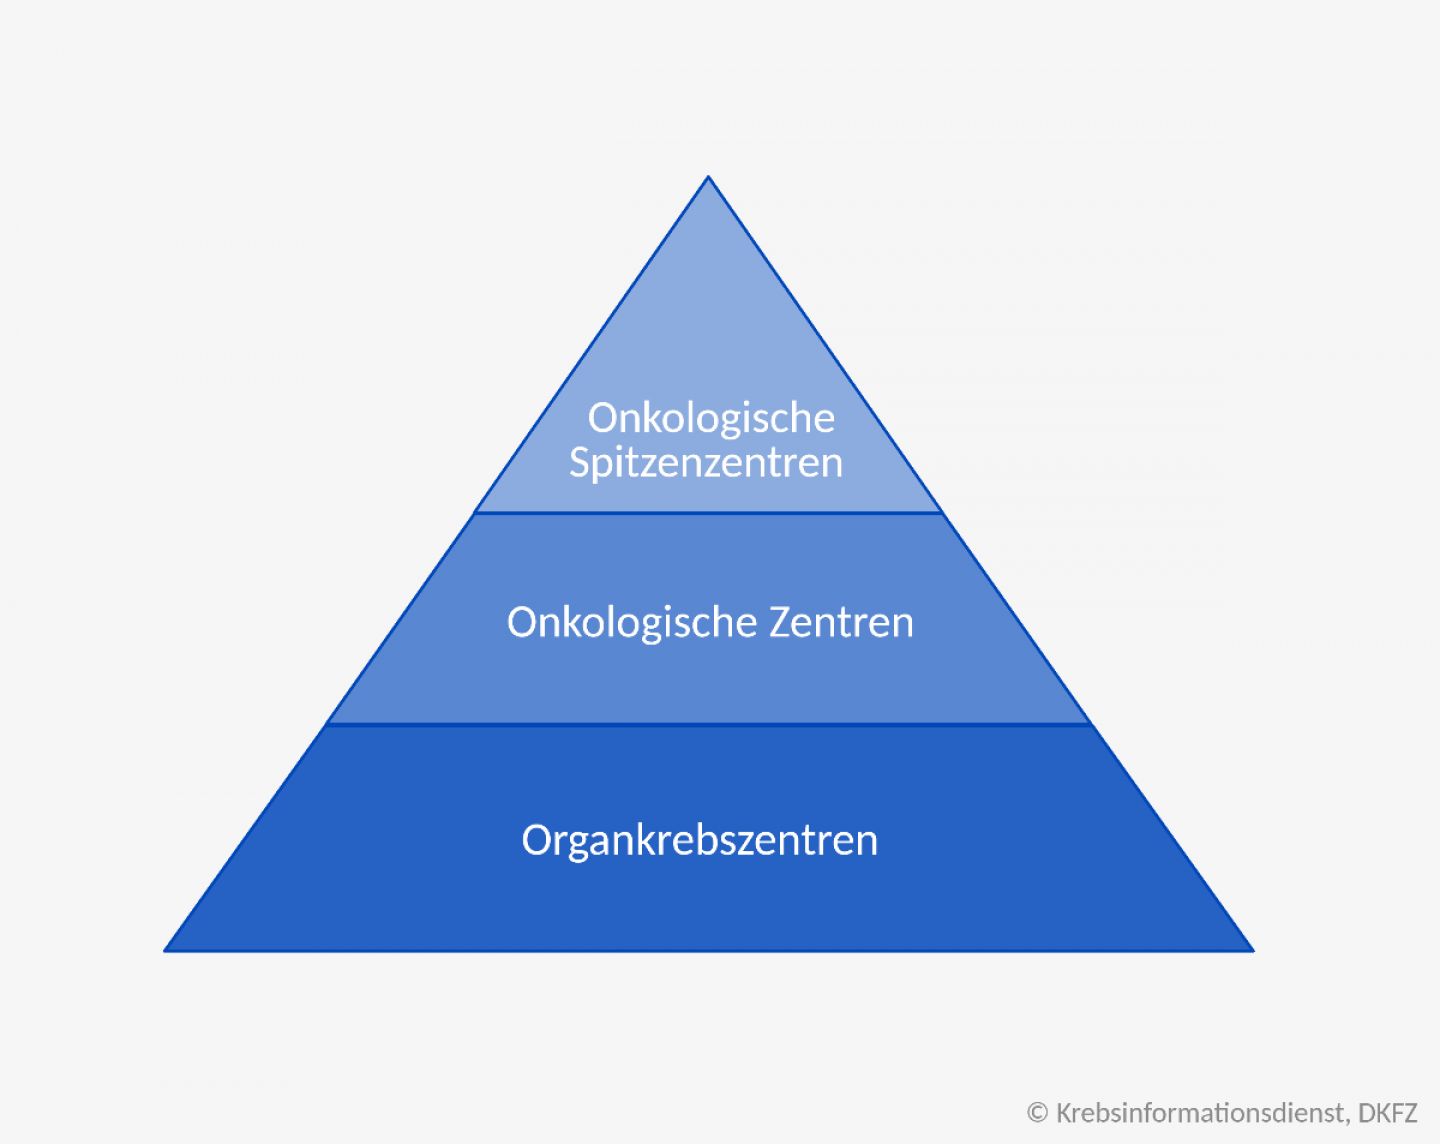 Eine Pyramide stellt das Stufenmodell der Versorgung von Krebspatientinnen und Krebspatienten an zertifizierten Zentren in Deutschland dar. Die Basis bilden die Organkrebszentren. In der Mitte sind die Onkologischen Zentren und an der Spitze die Onkologischen Spitzenzentren.